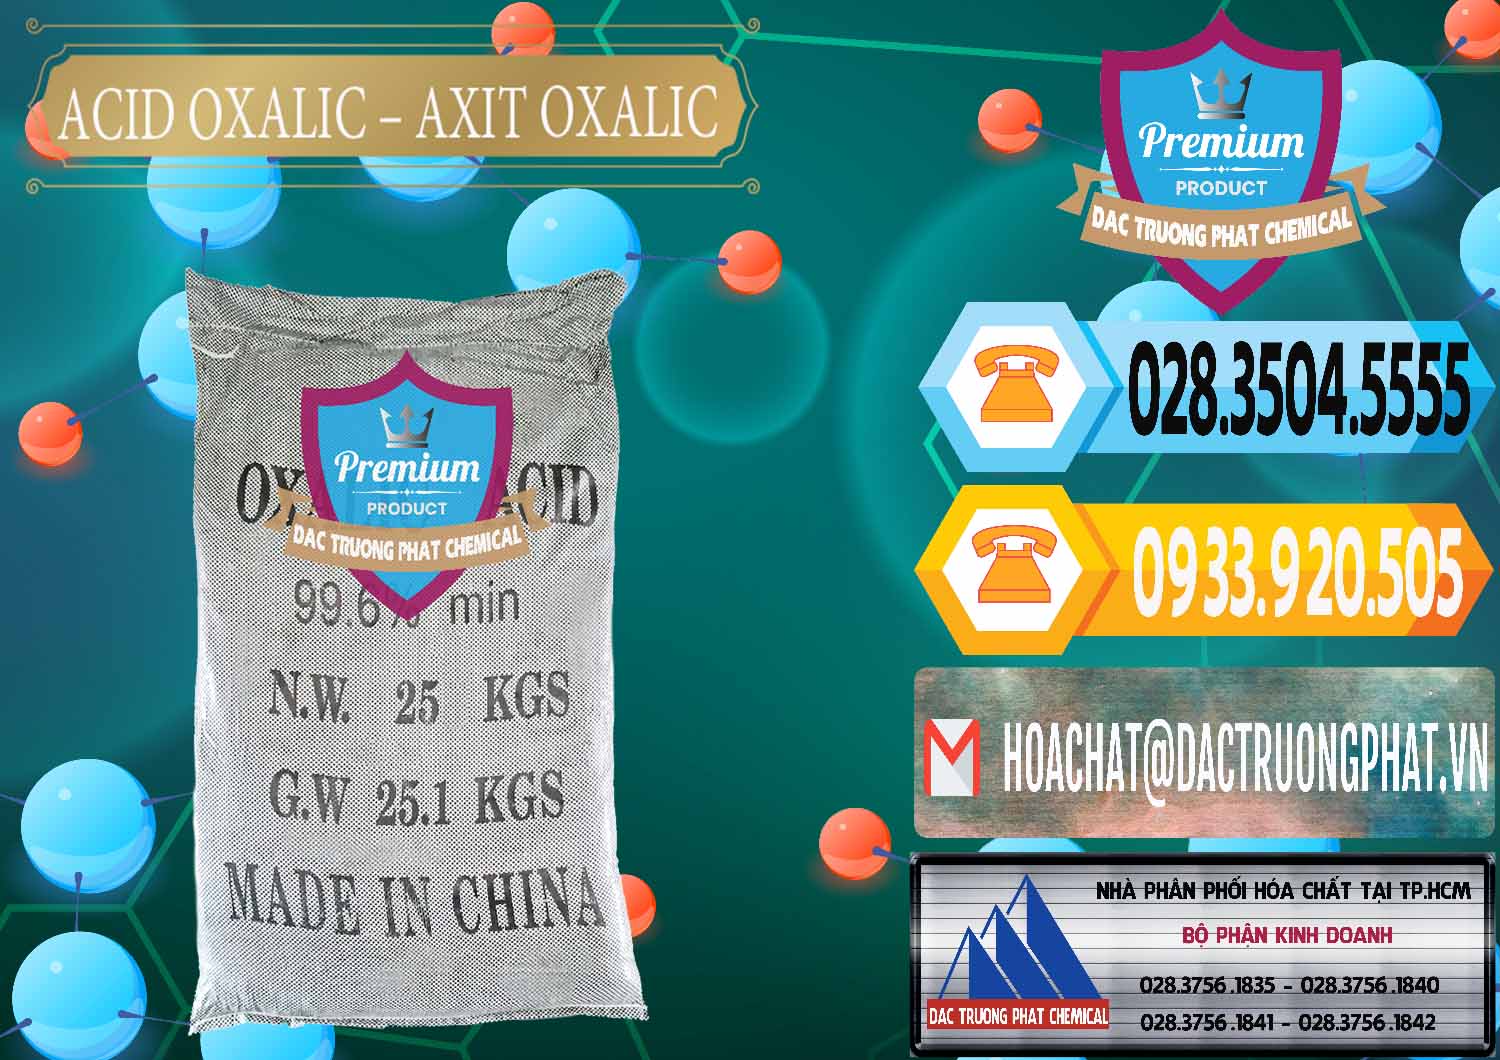 Đơn vị chuyên bán ( cung cấp ) Acid Oxalic – Axit Oxalic 99.6% Trung Quốc China - 0014 - Công ty kinh doanh _ cung cấp hóa chất tại TP.HCM - hoachattayrua.net